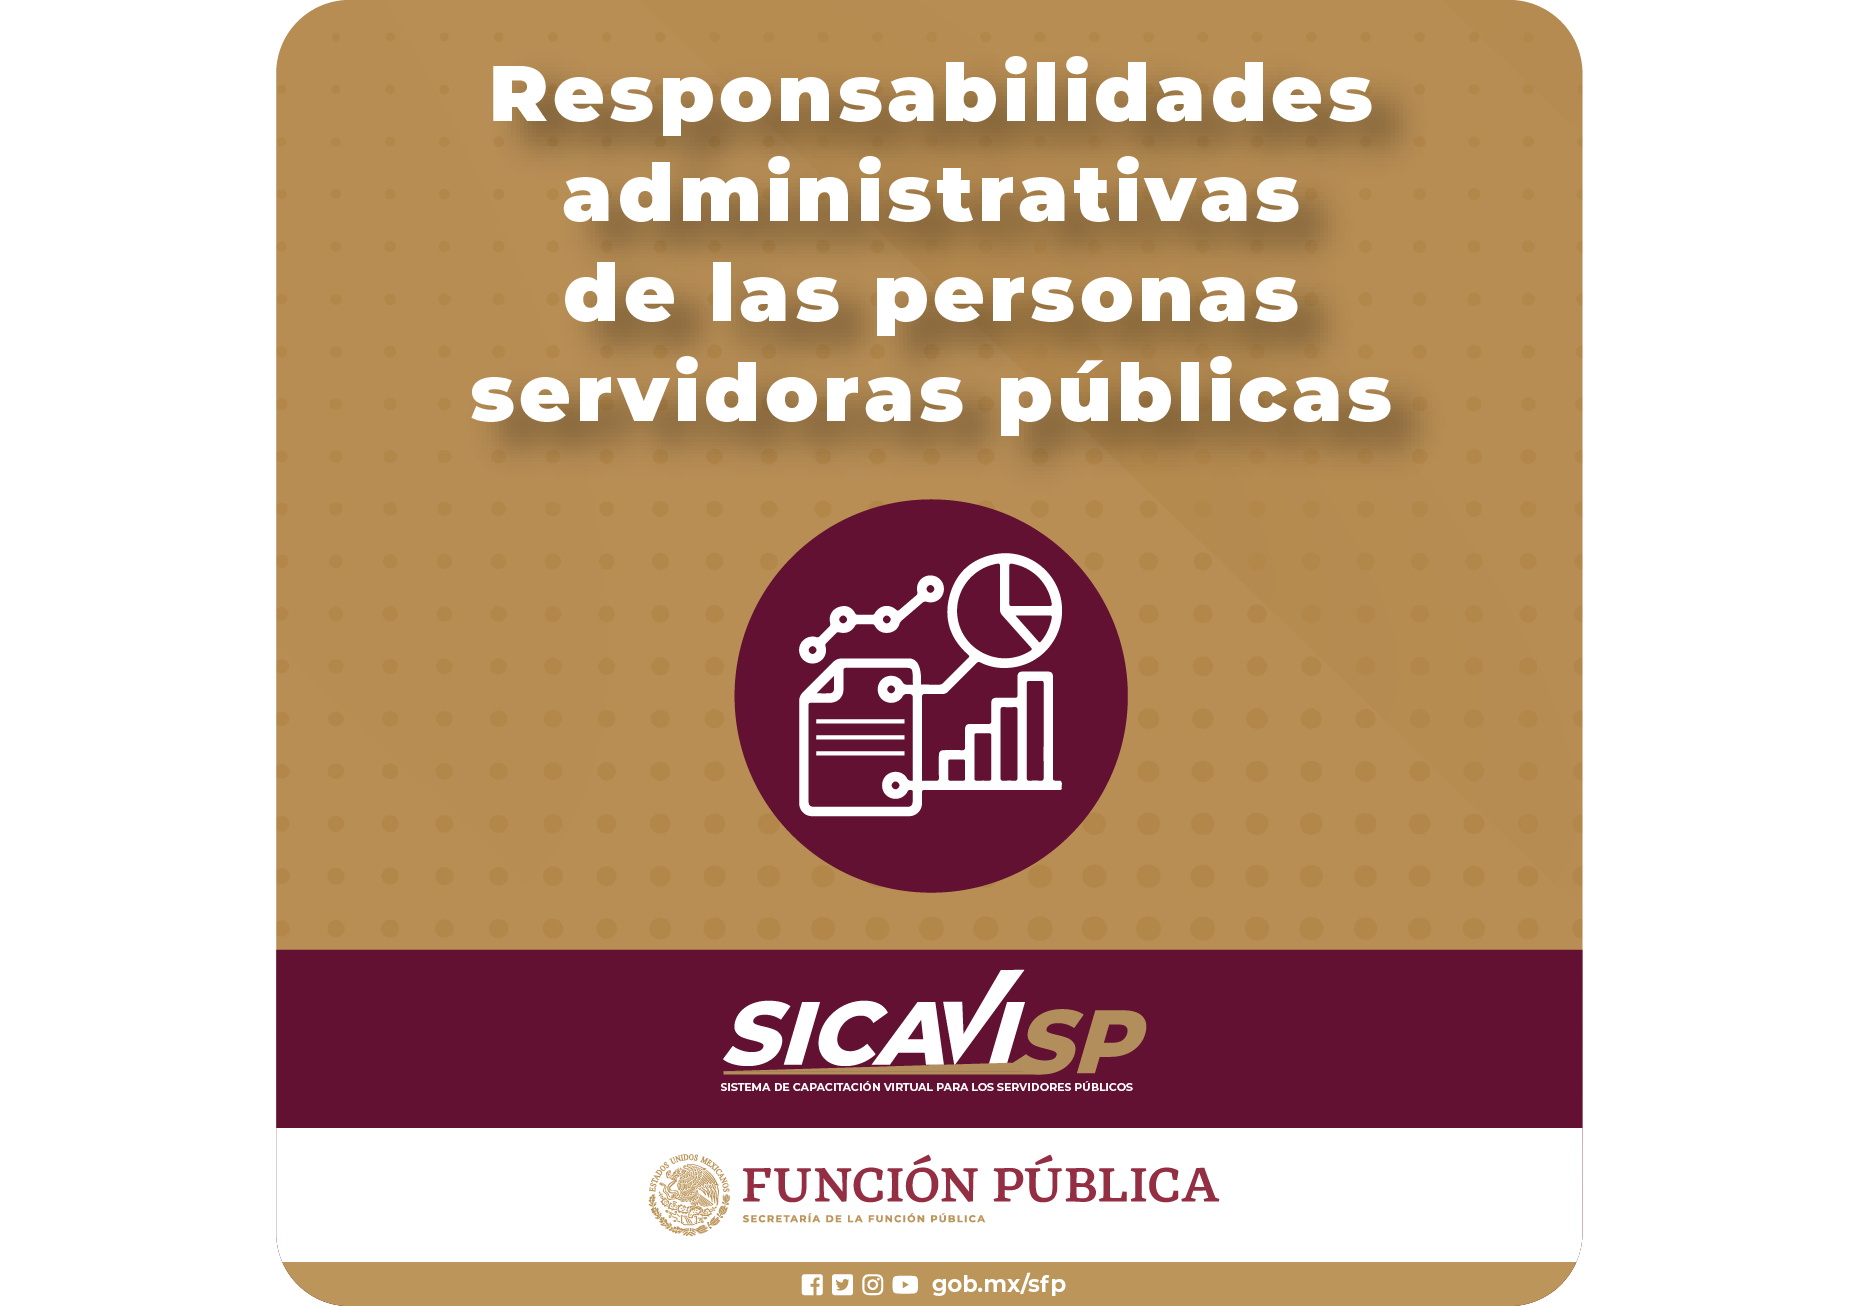 Responsabilidades Administrativas de las personas servidoras públicas